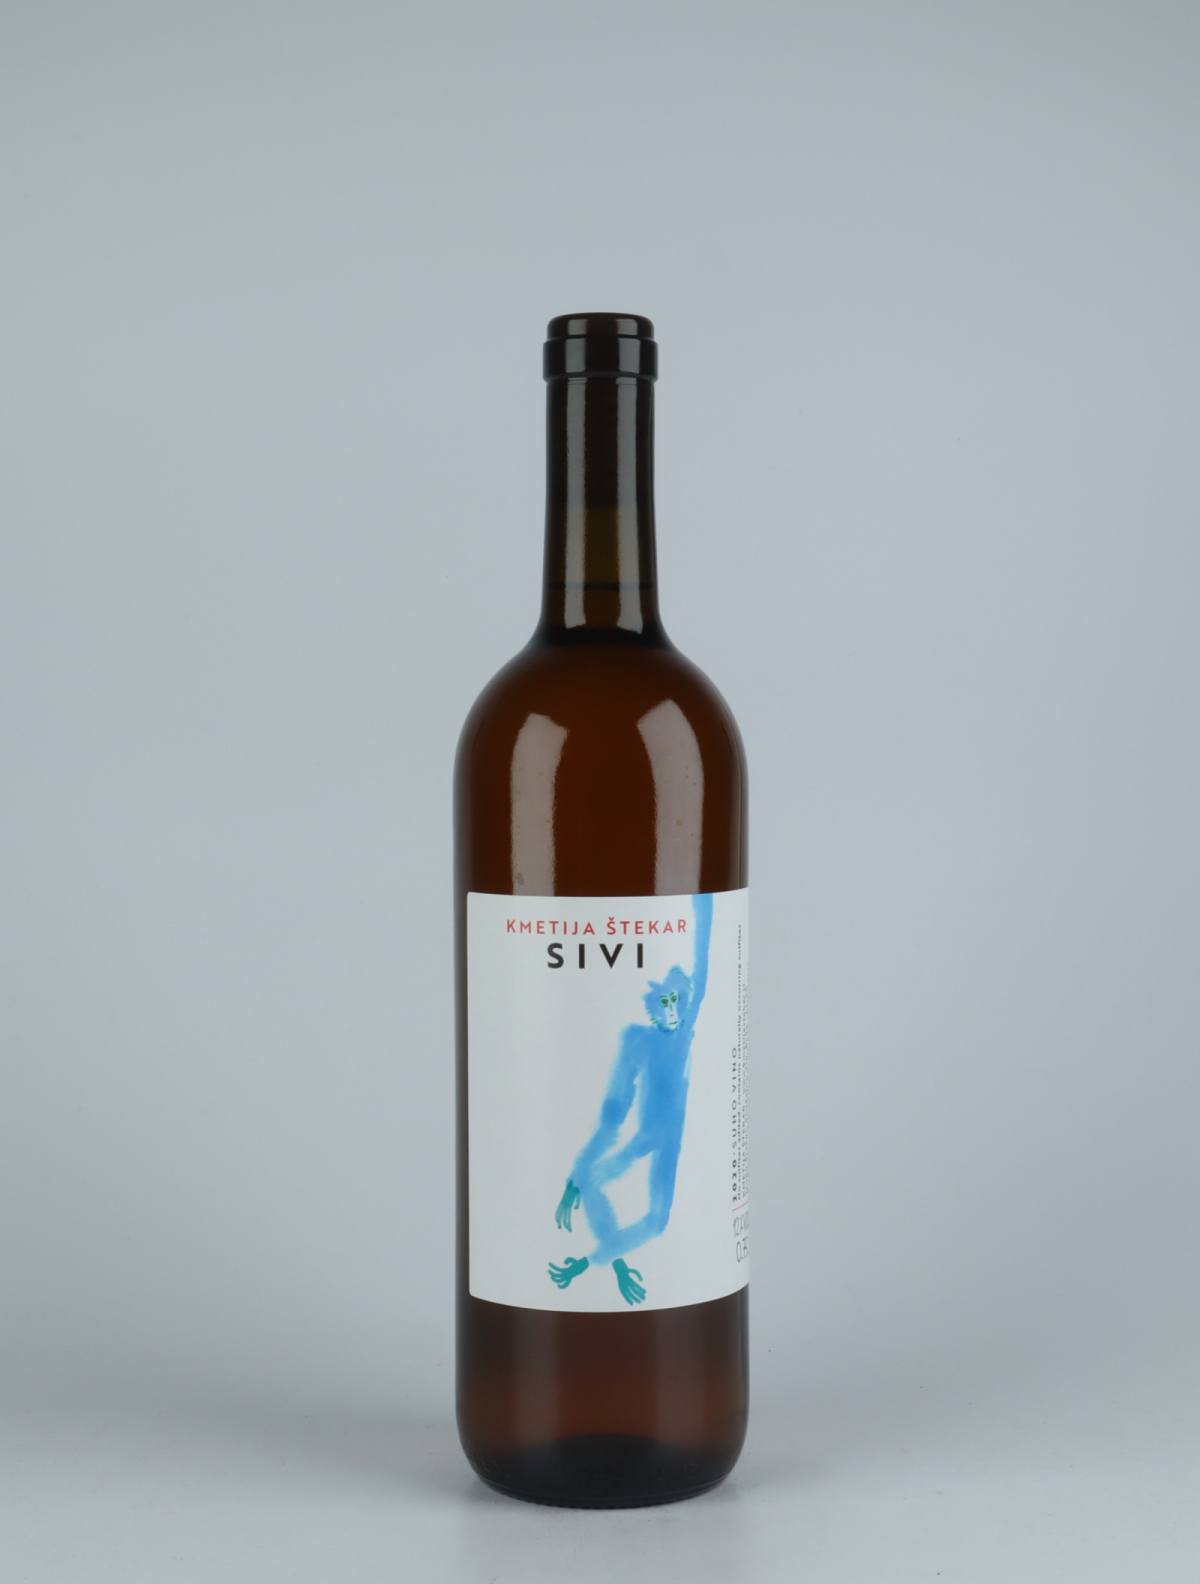 A bottle 2020 Sivi Orange wine from Kmetija Stekar, Brda in Slovenia